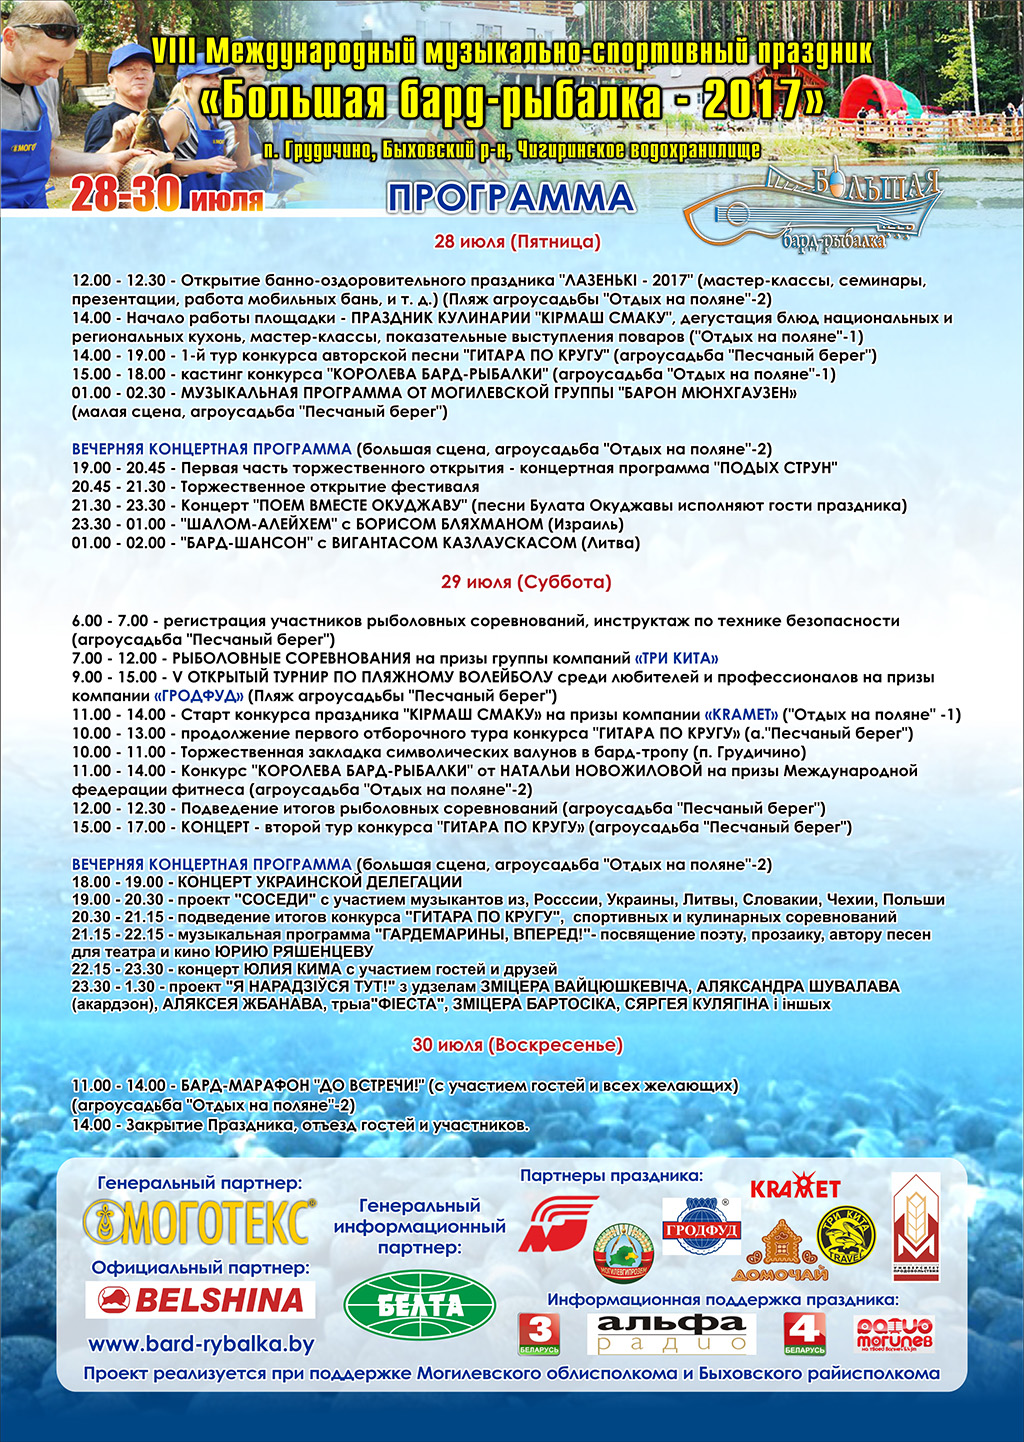 VIII Международный музыкально-спортивный праздник «Большая бард-рыбалка»